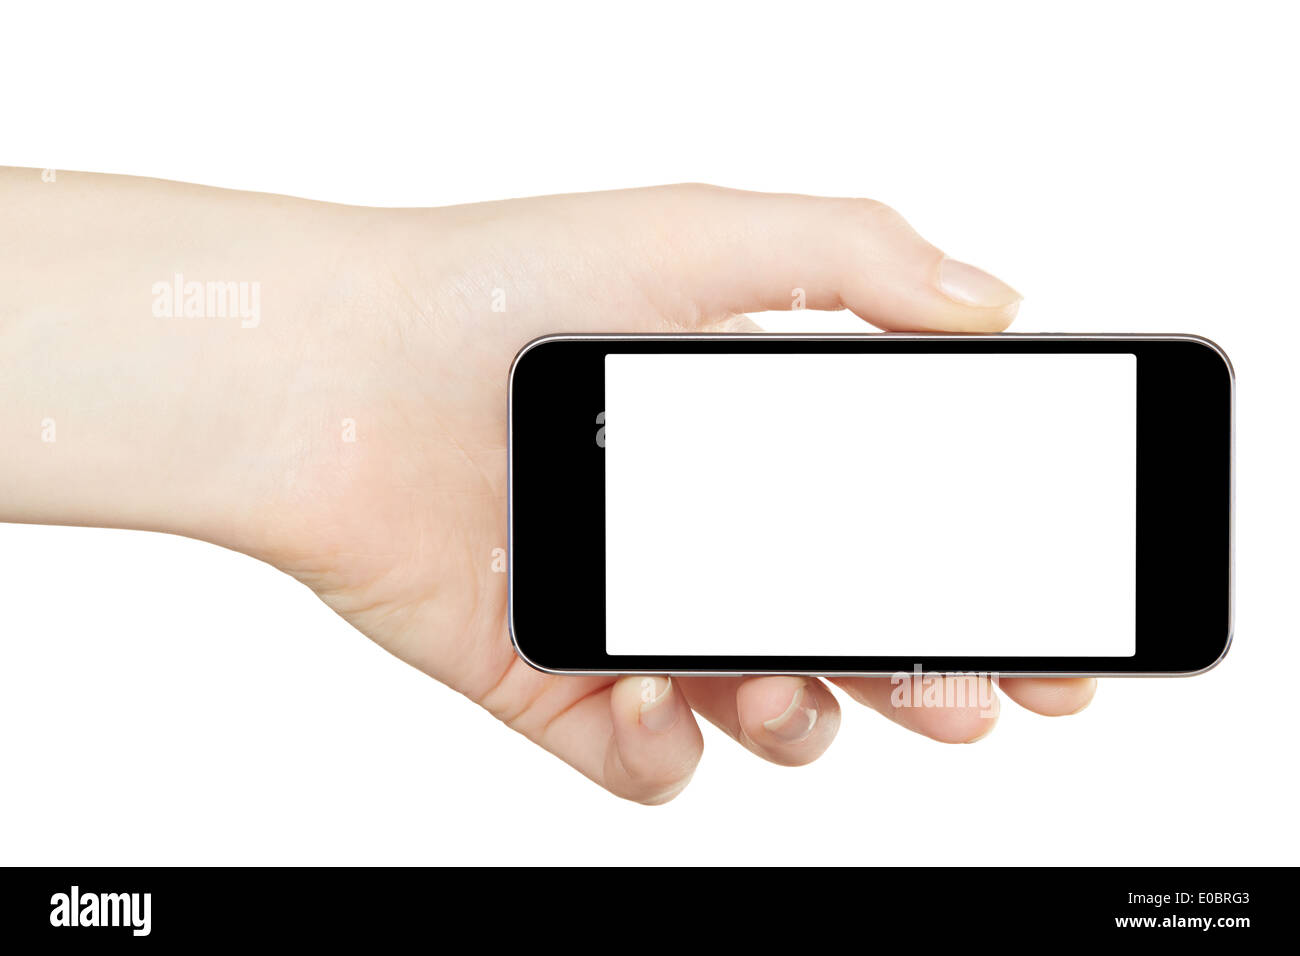 Smartphone in hand, horizontal Stock Photo